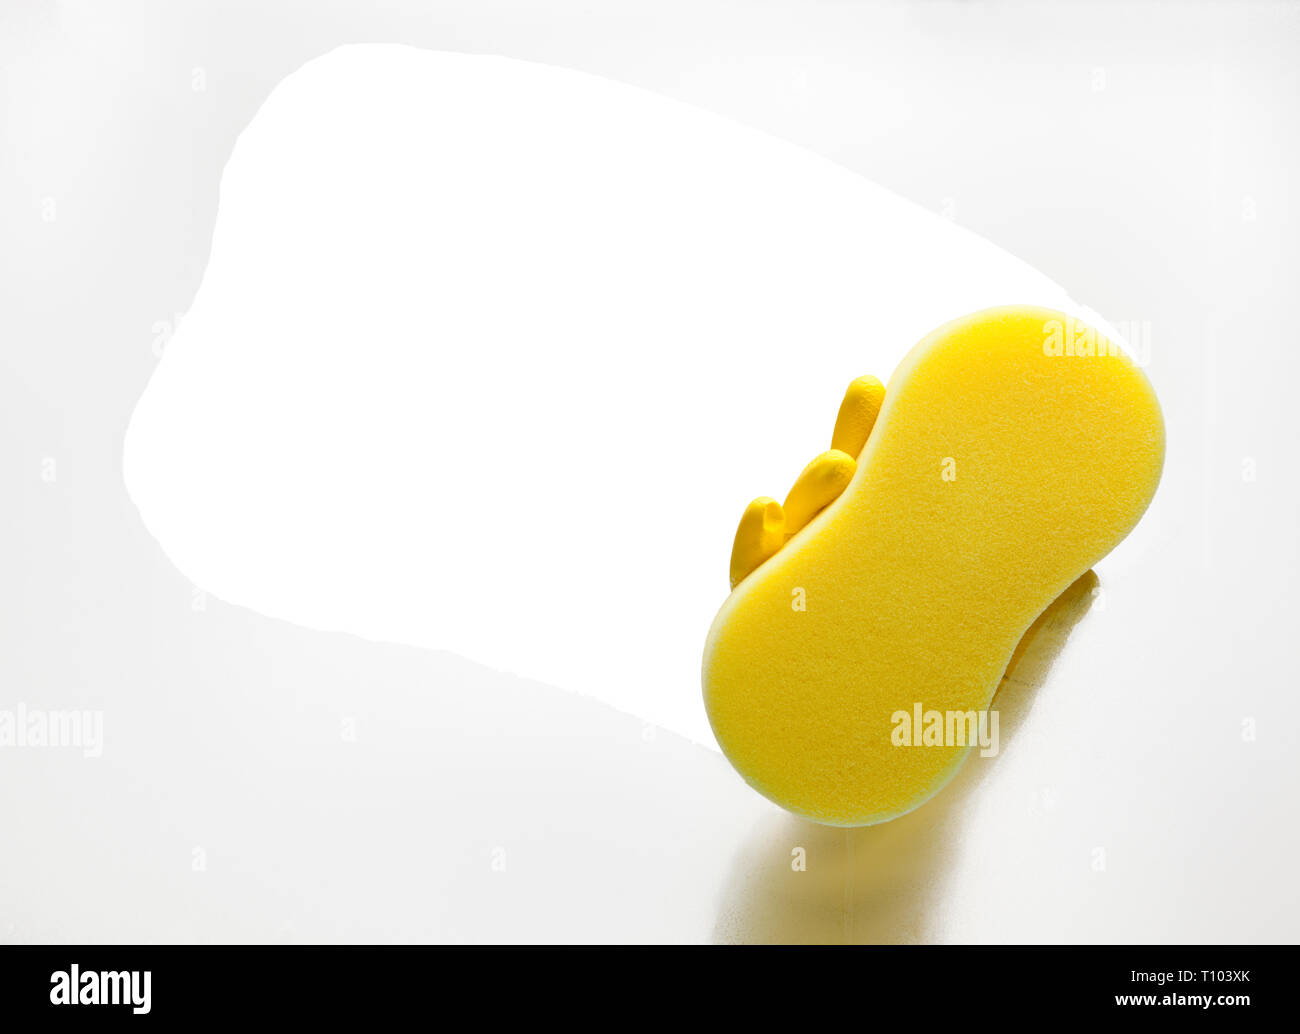 Concept de transparence. La main avec une éponge jaune fenêtre de nettoyage. Zone transparente isolé avec chemin de détourage. Banque D'Images